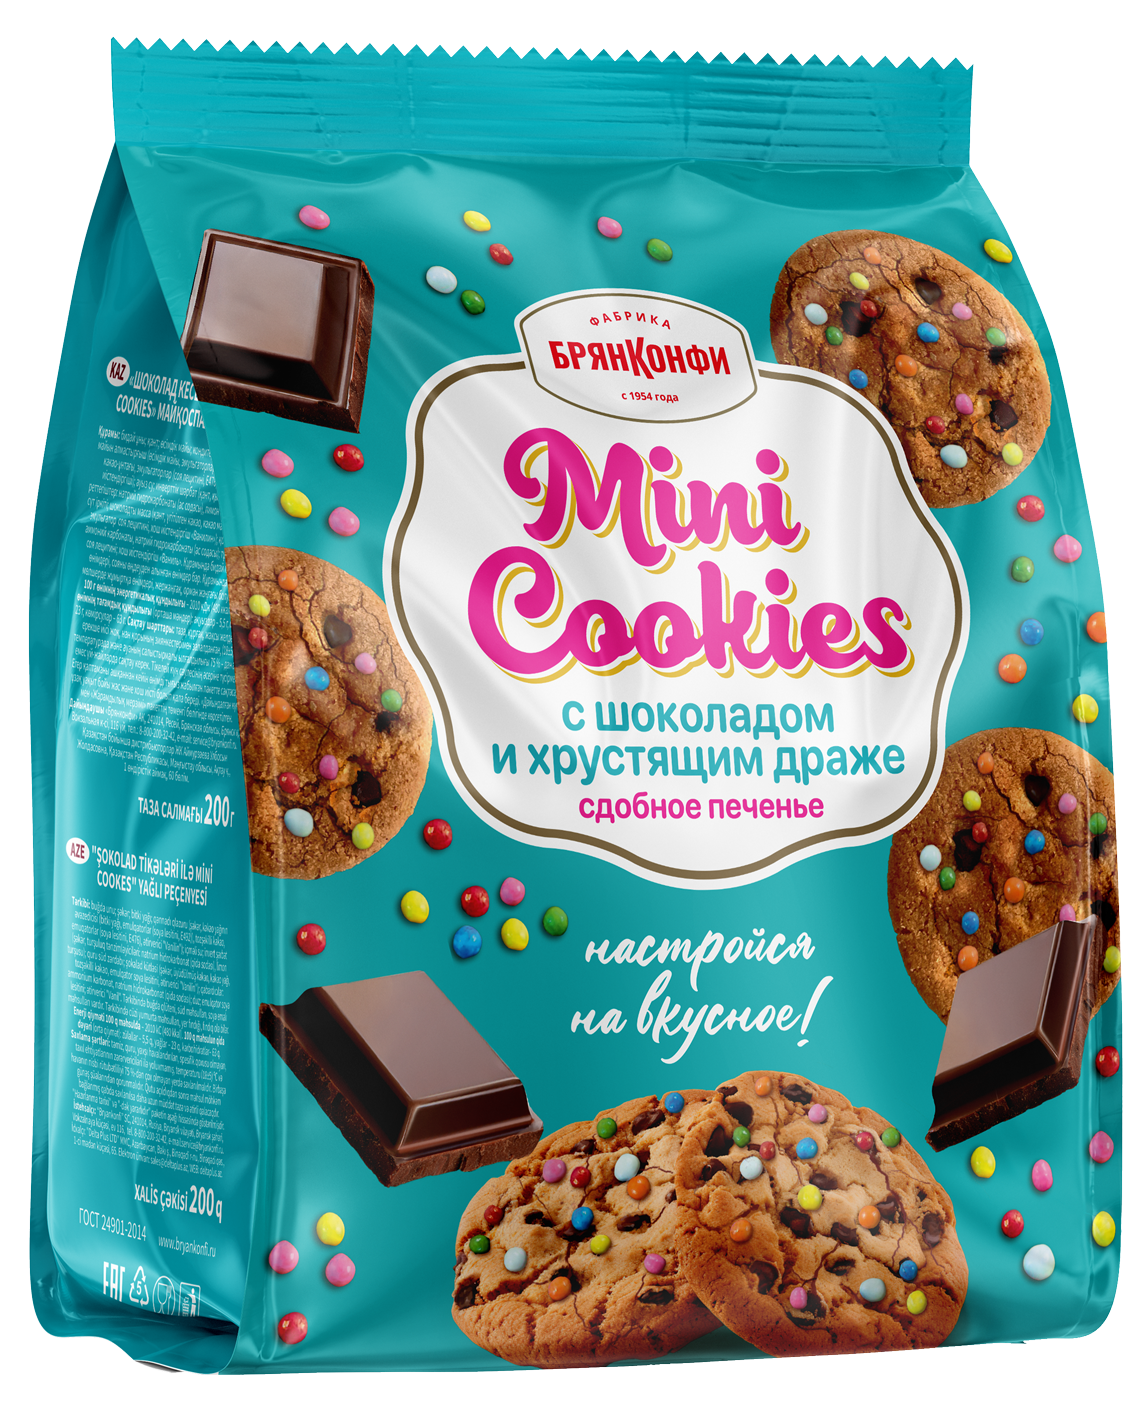 Печенье "Mini Cookies" с шоколадом и хрустящим драже 200г/Брянконфи